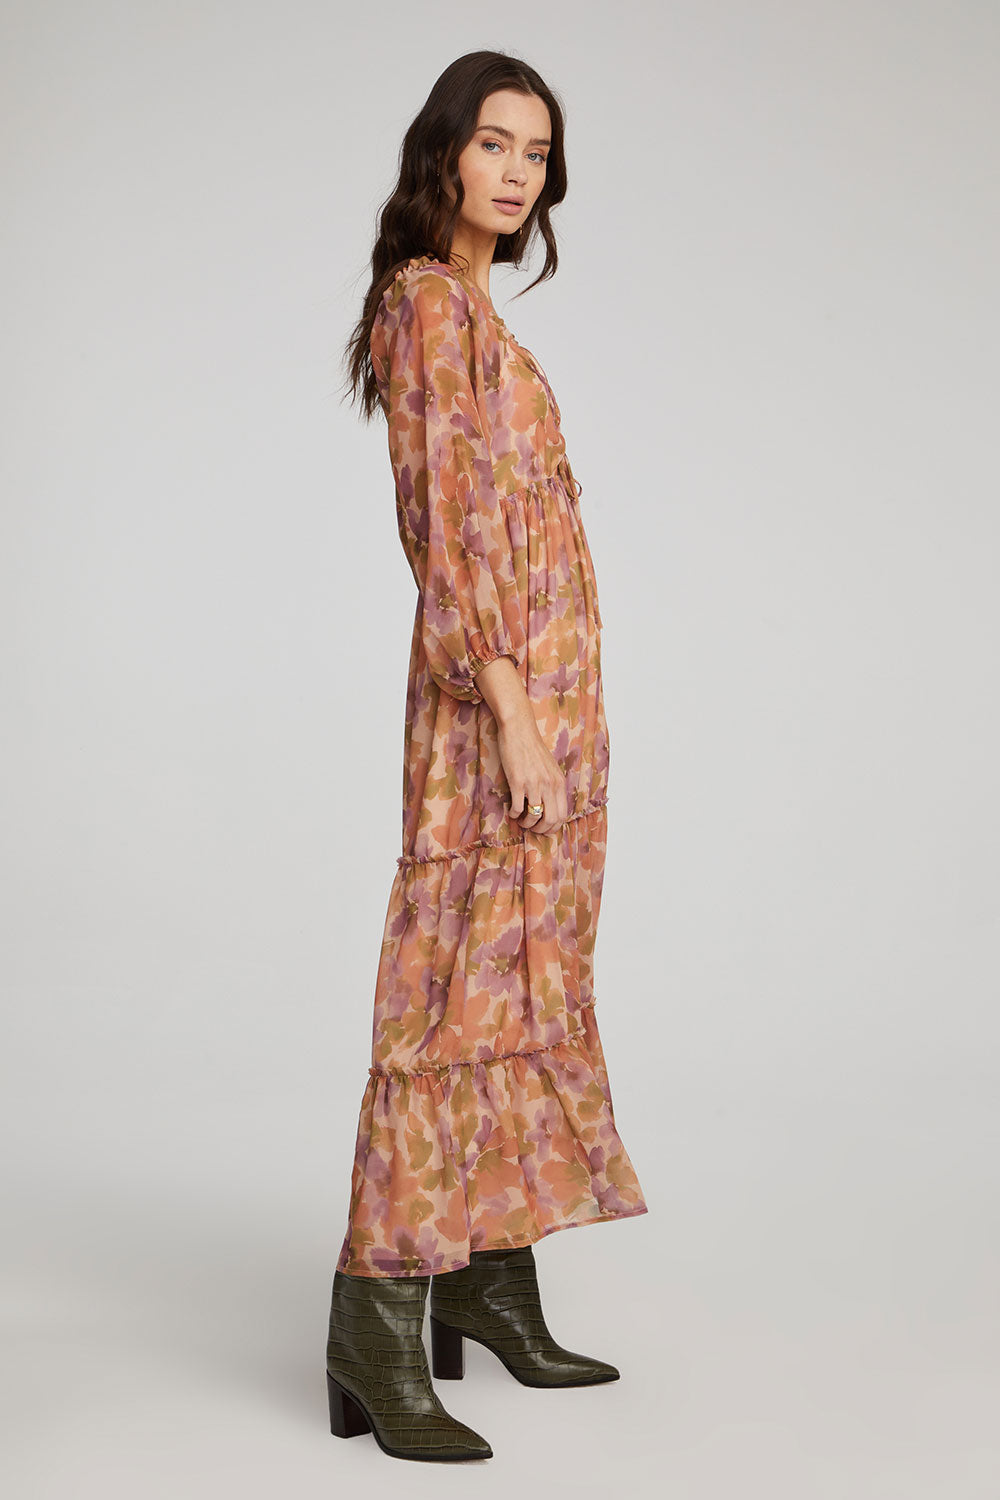 Saltwater Luxe Kimono – BOHO thrift shop